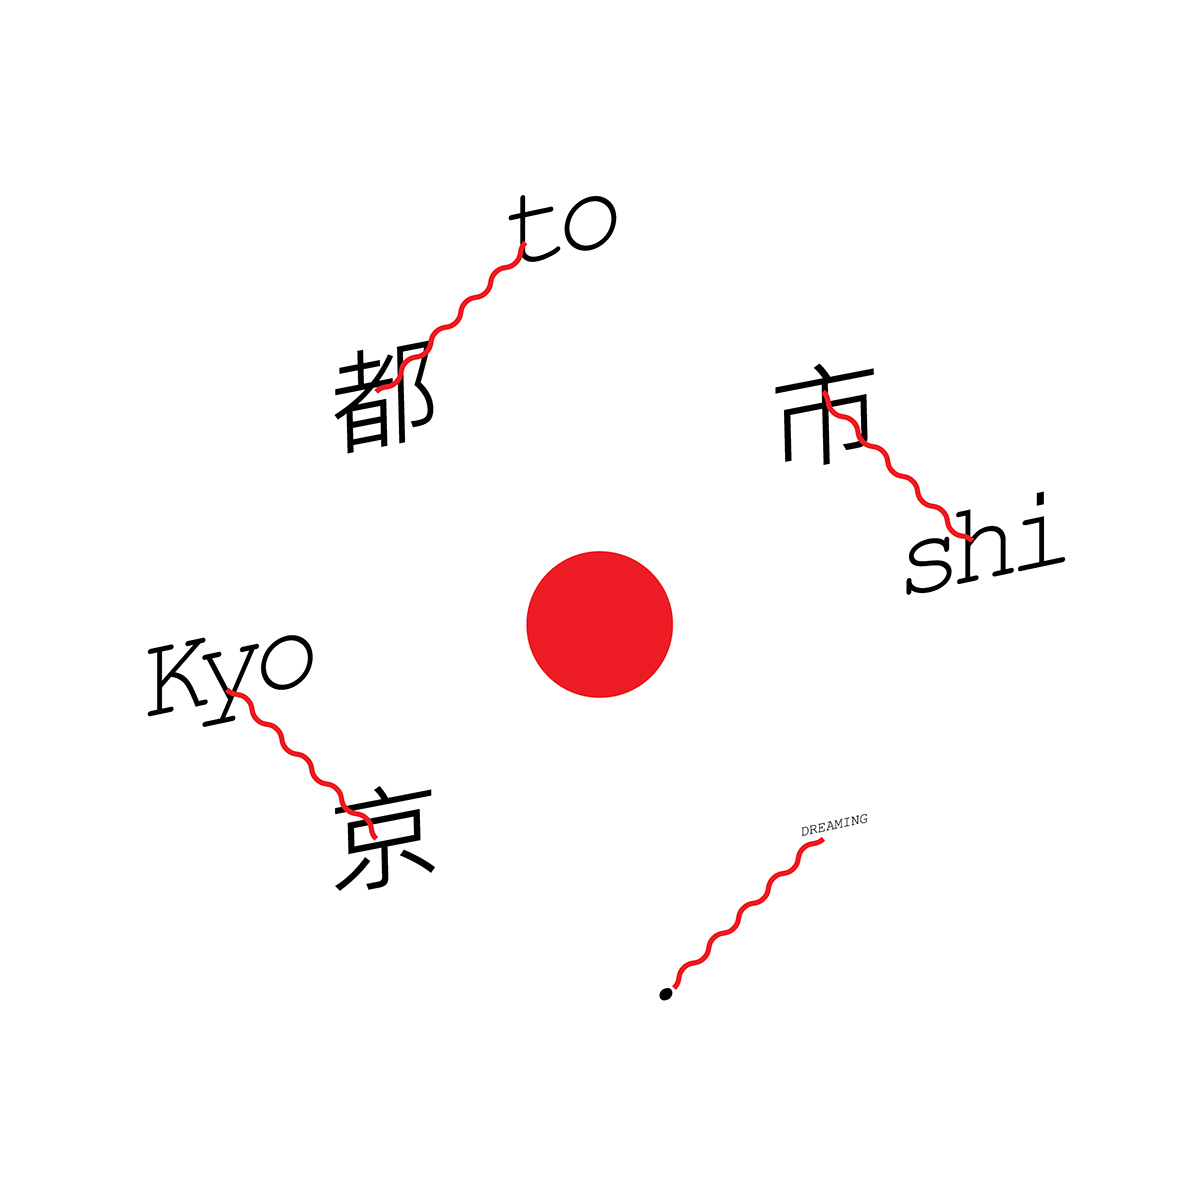 kyoto pattern